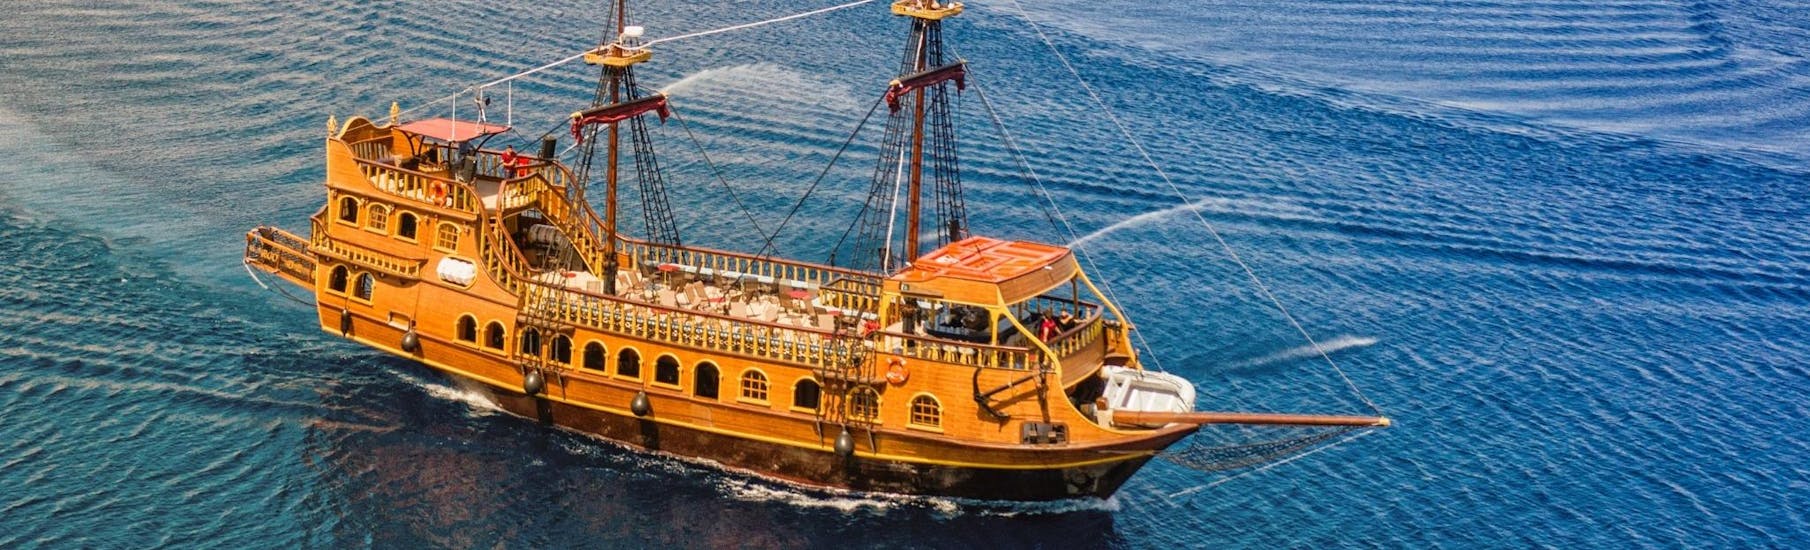 El elegante barco pirata navegando por el mar de Icaria durante un viaje en barco pirata desde Kos a Kalymnos, Pserimos y Plati con Barcos de Pirata.